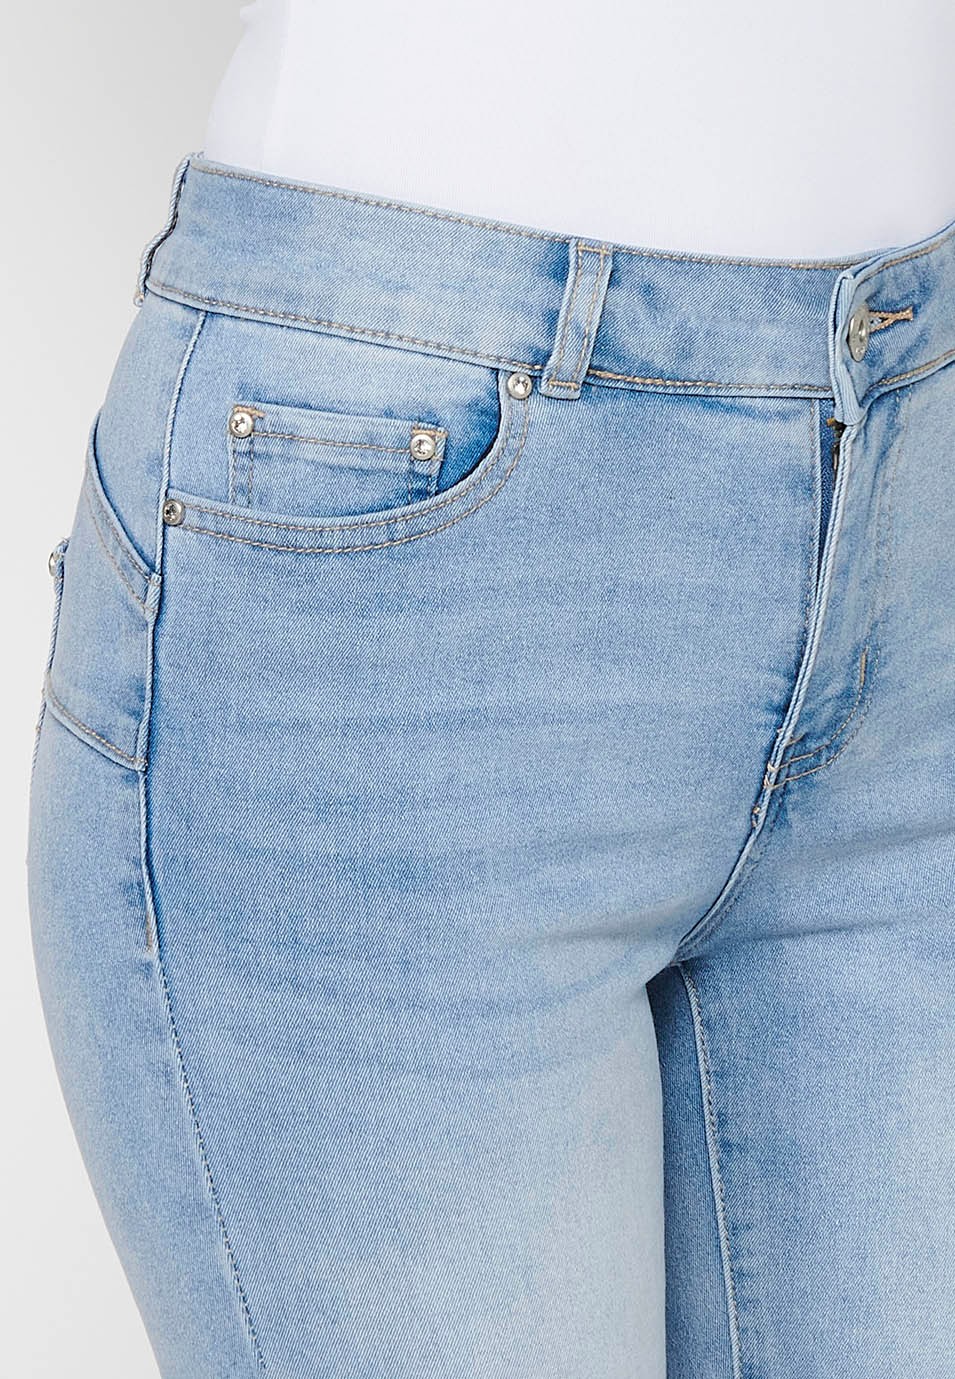 Pantalón largo jeans slim con Cierre delantero con cremallera y Detalles bordados florales de Color Azul claro para Mujer 5